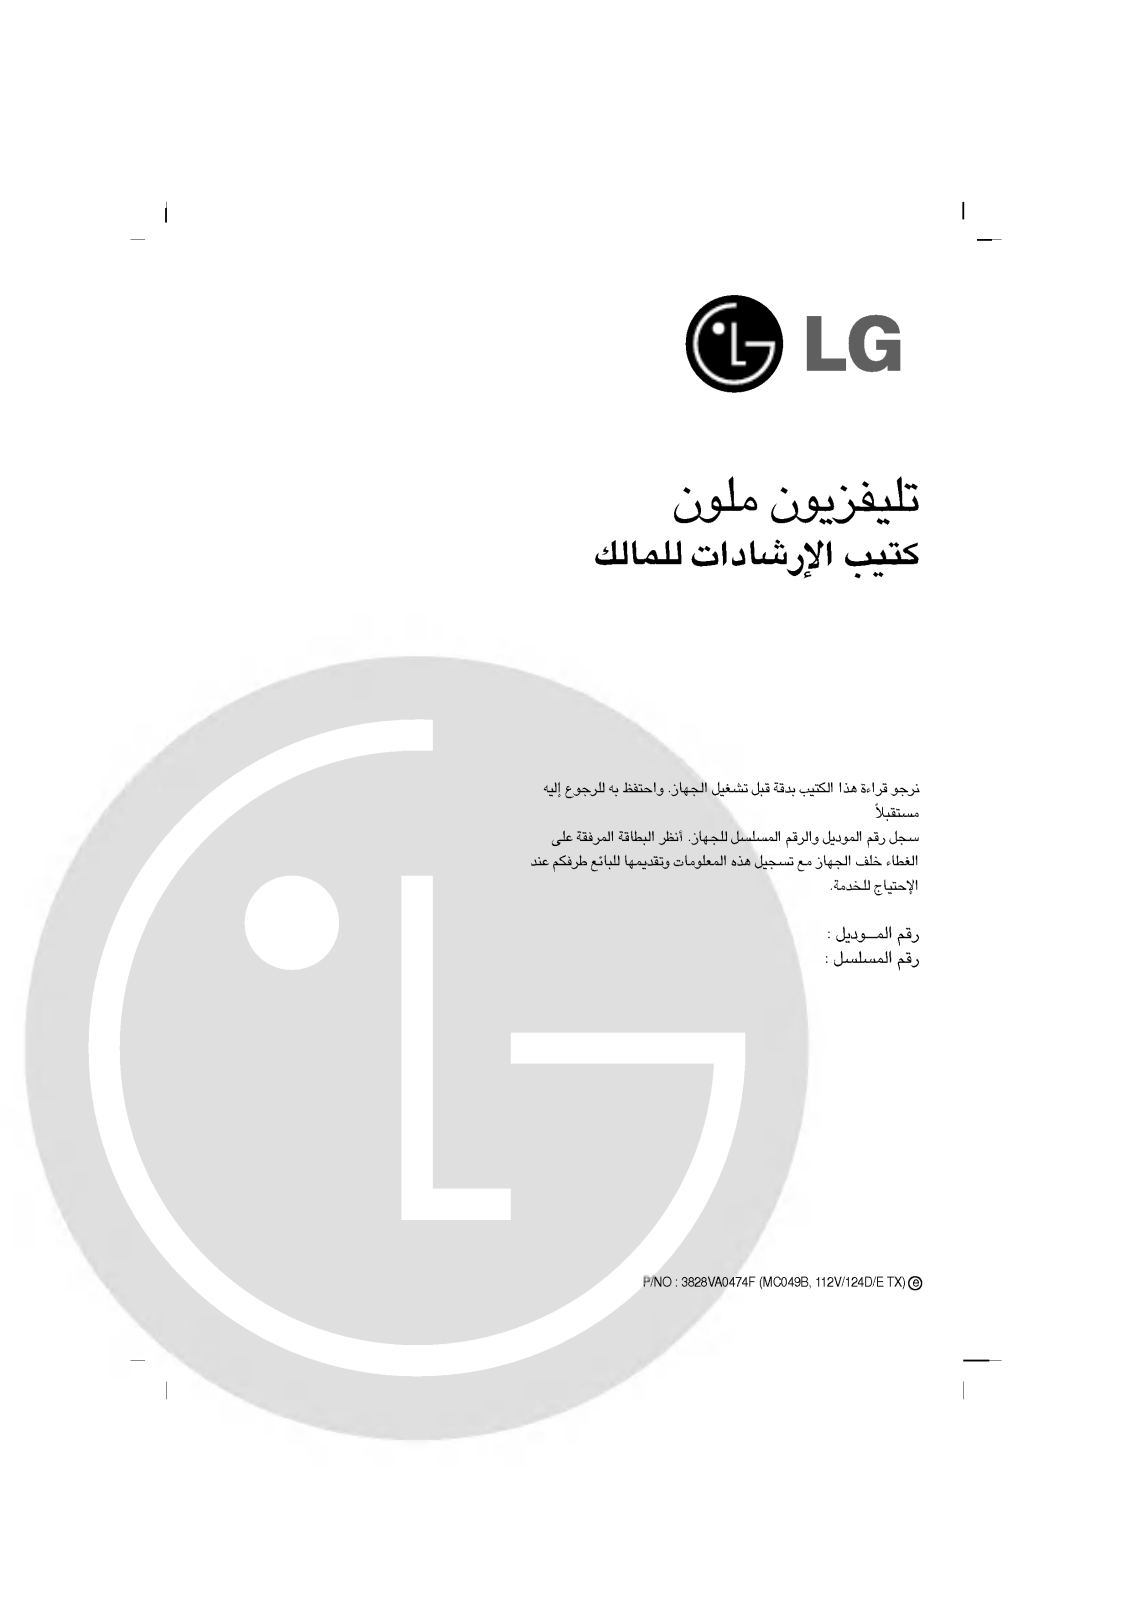 LG RT-21FE90VW Owner's Manual